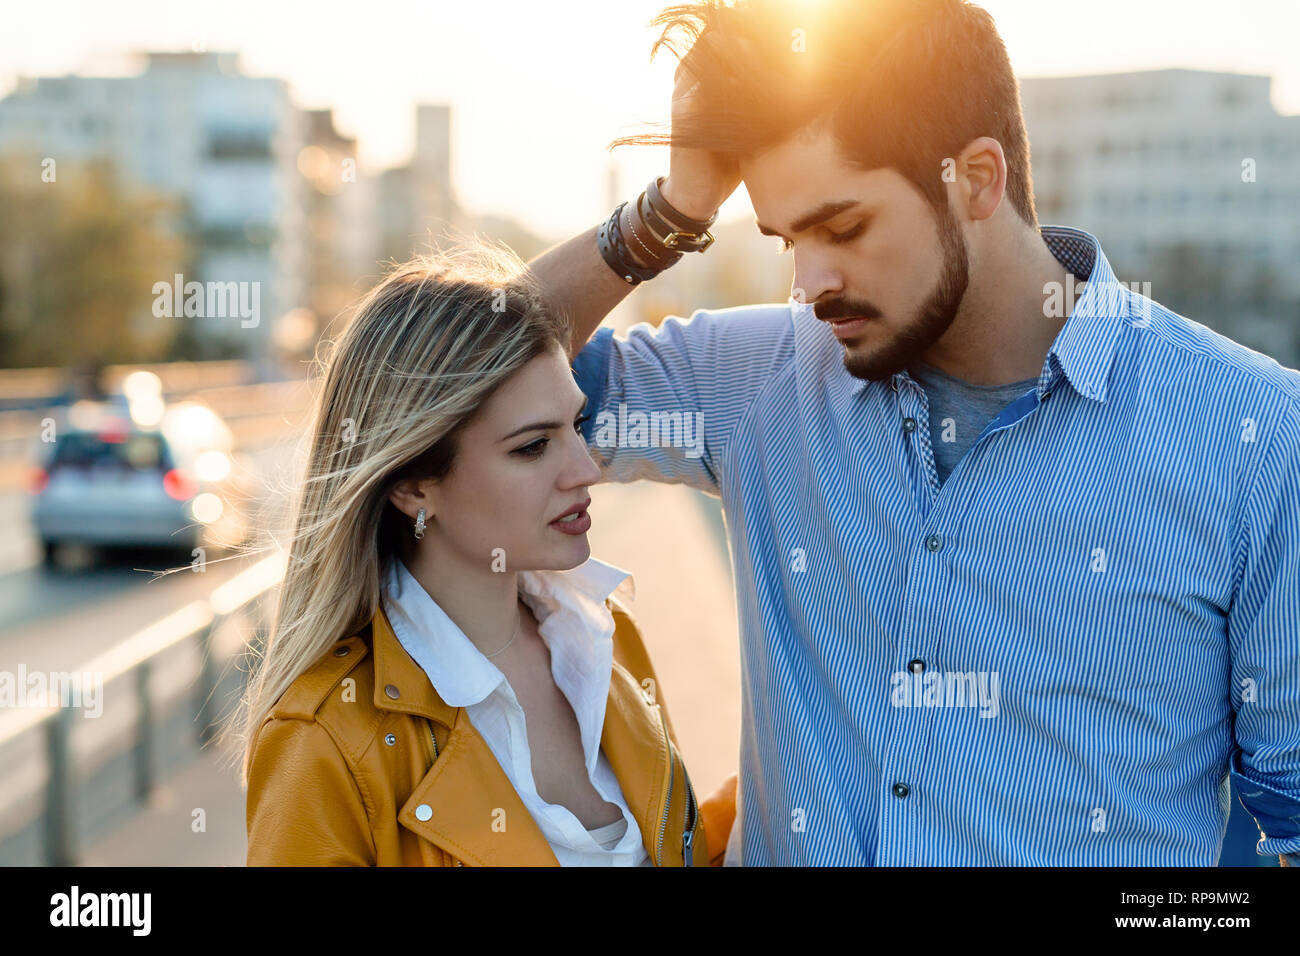 El conflicto y el estrés emocional en los jóvenes la relación de la pareja Foto de stock